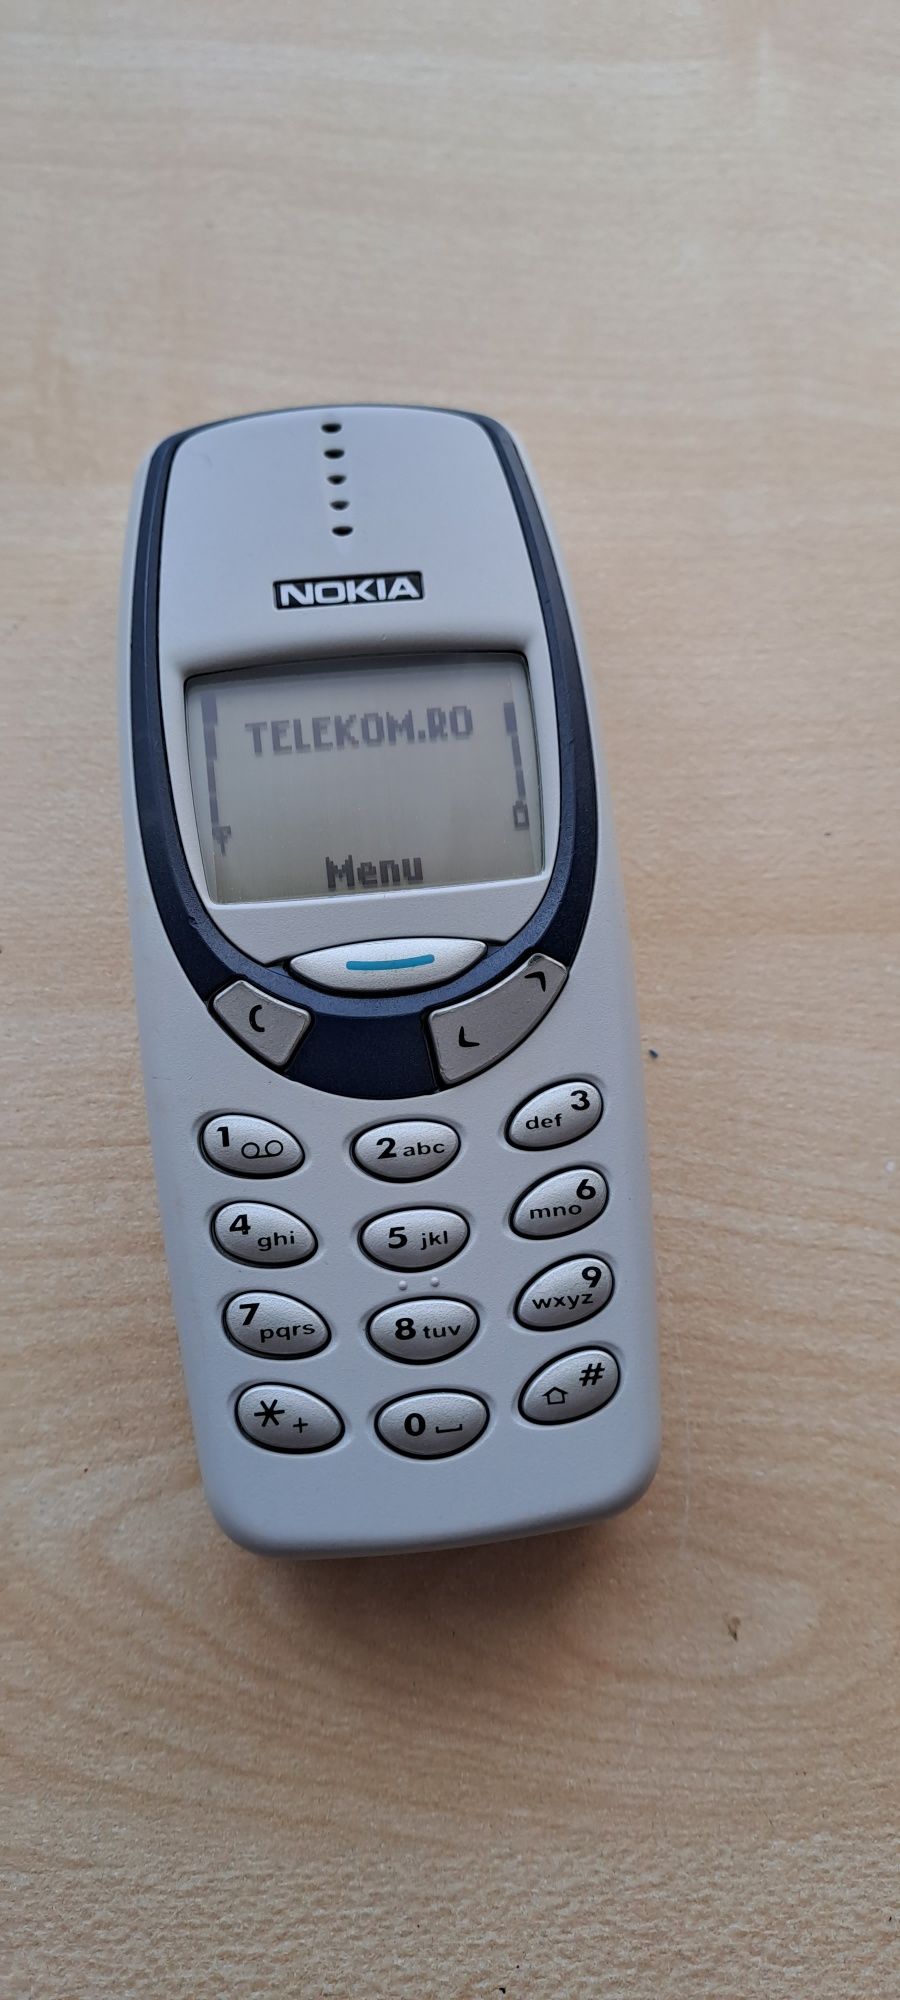 Nokia 3310 - Telefon vechi colectie